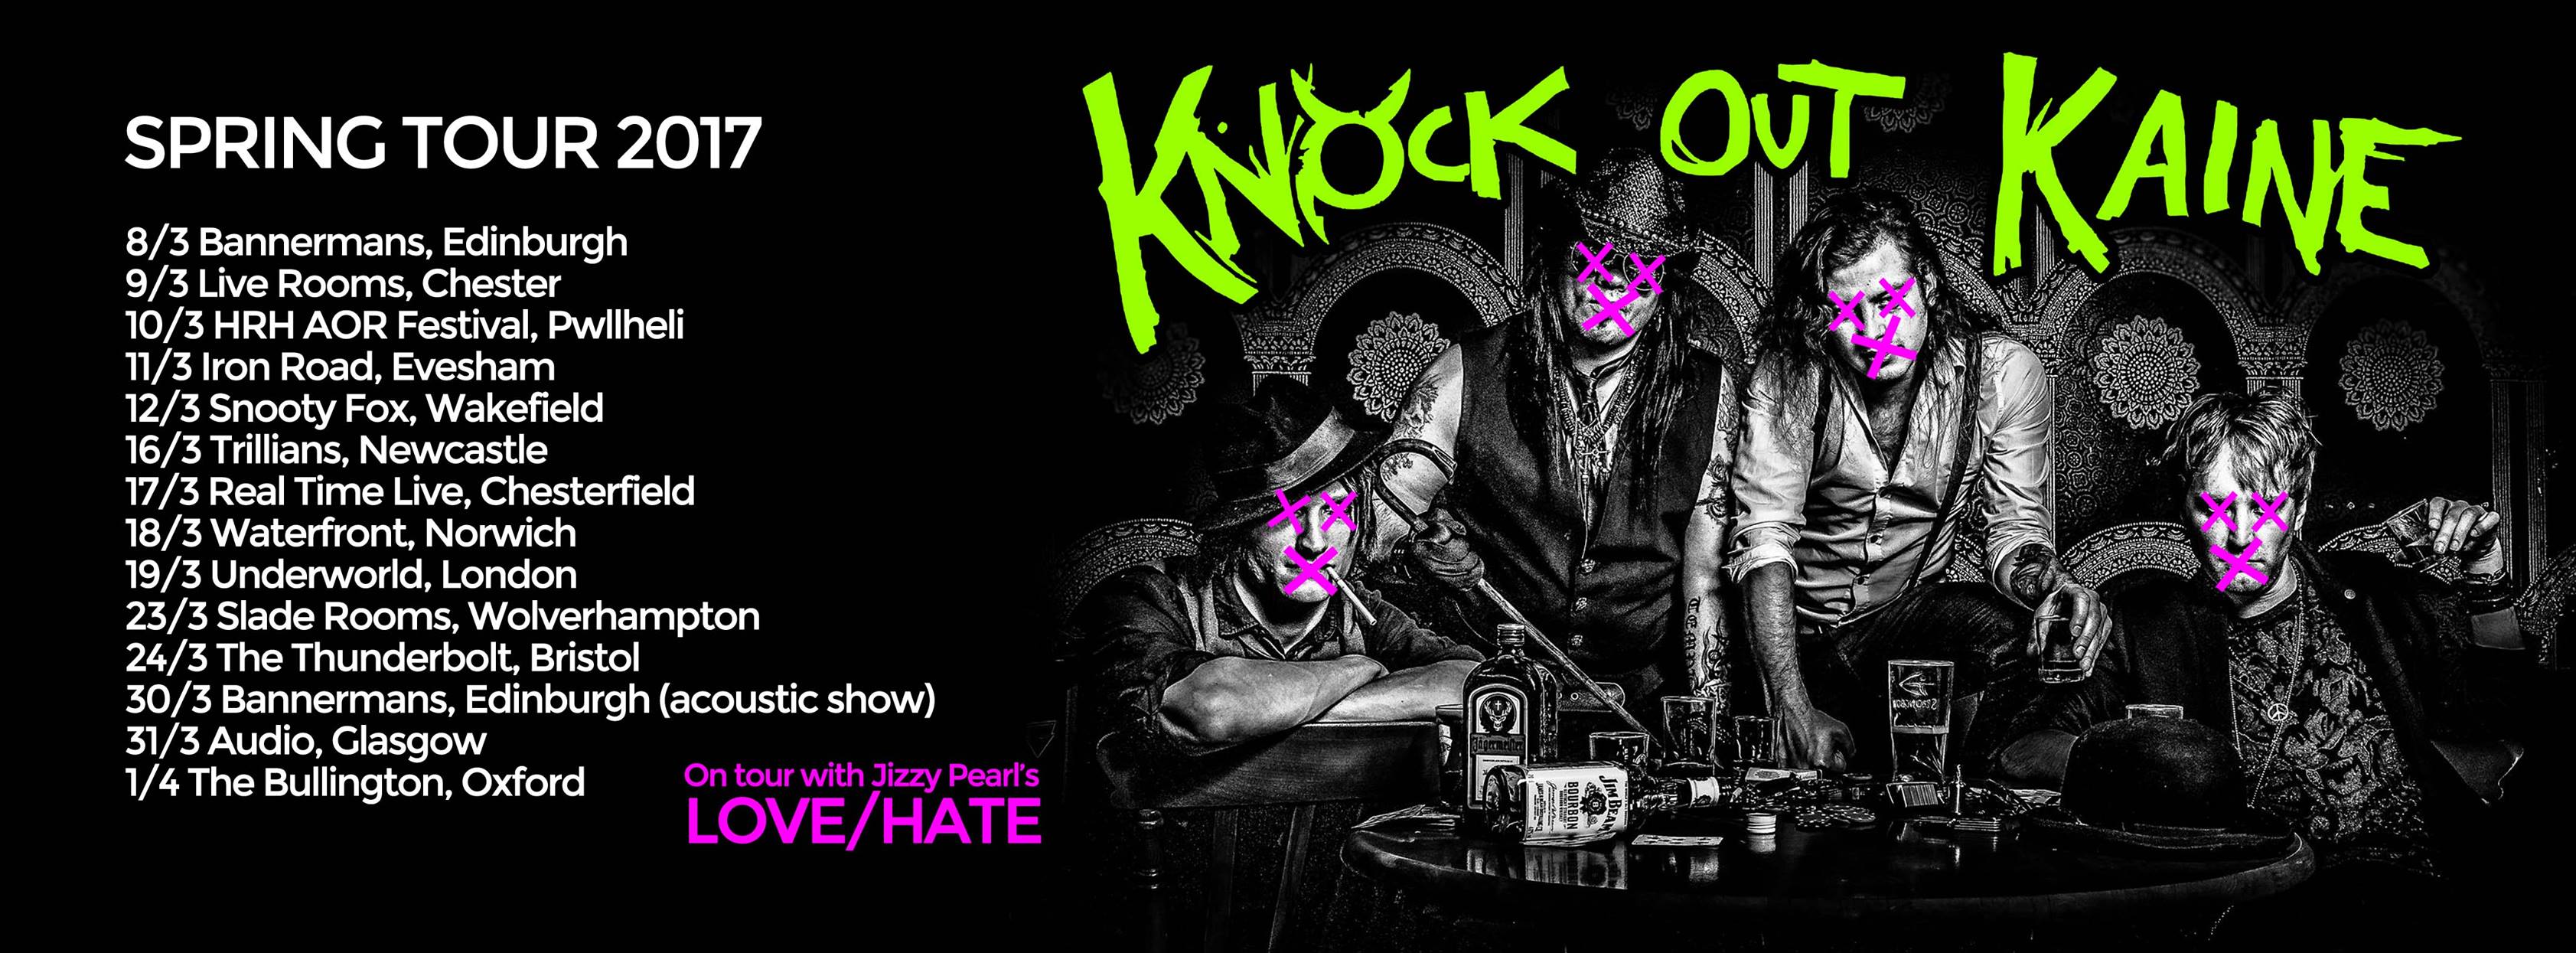 Knock Out Kaine Spring Tour 2017